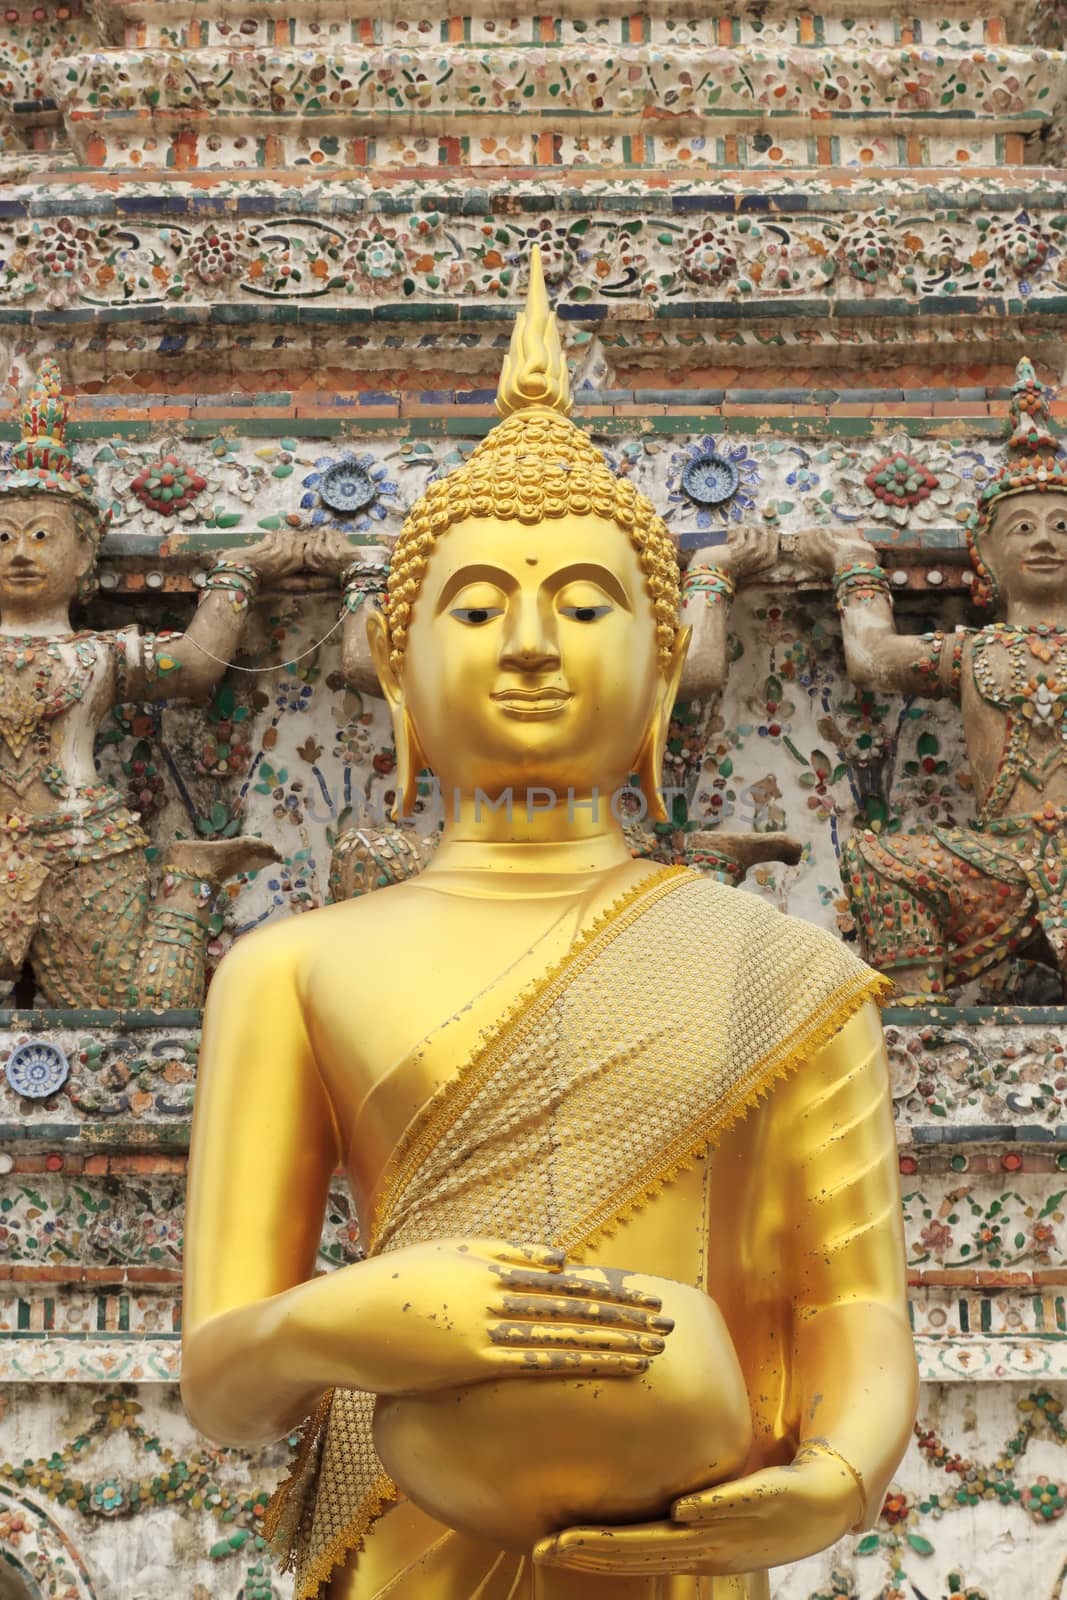 Buddha statue at Wat Arun Wararam in thailand.